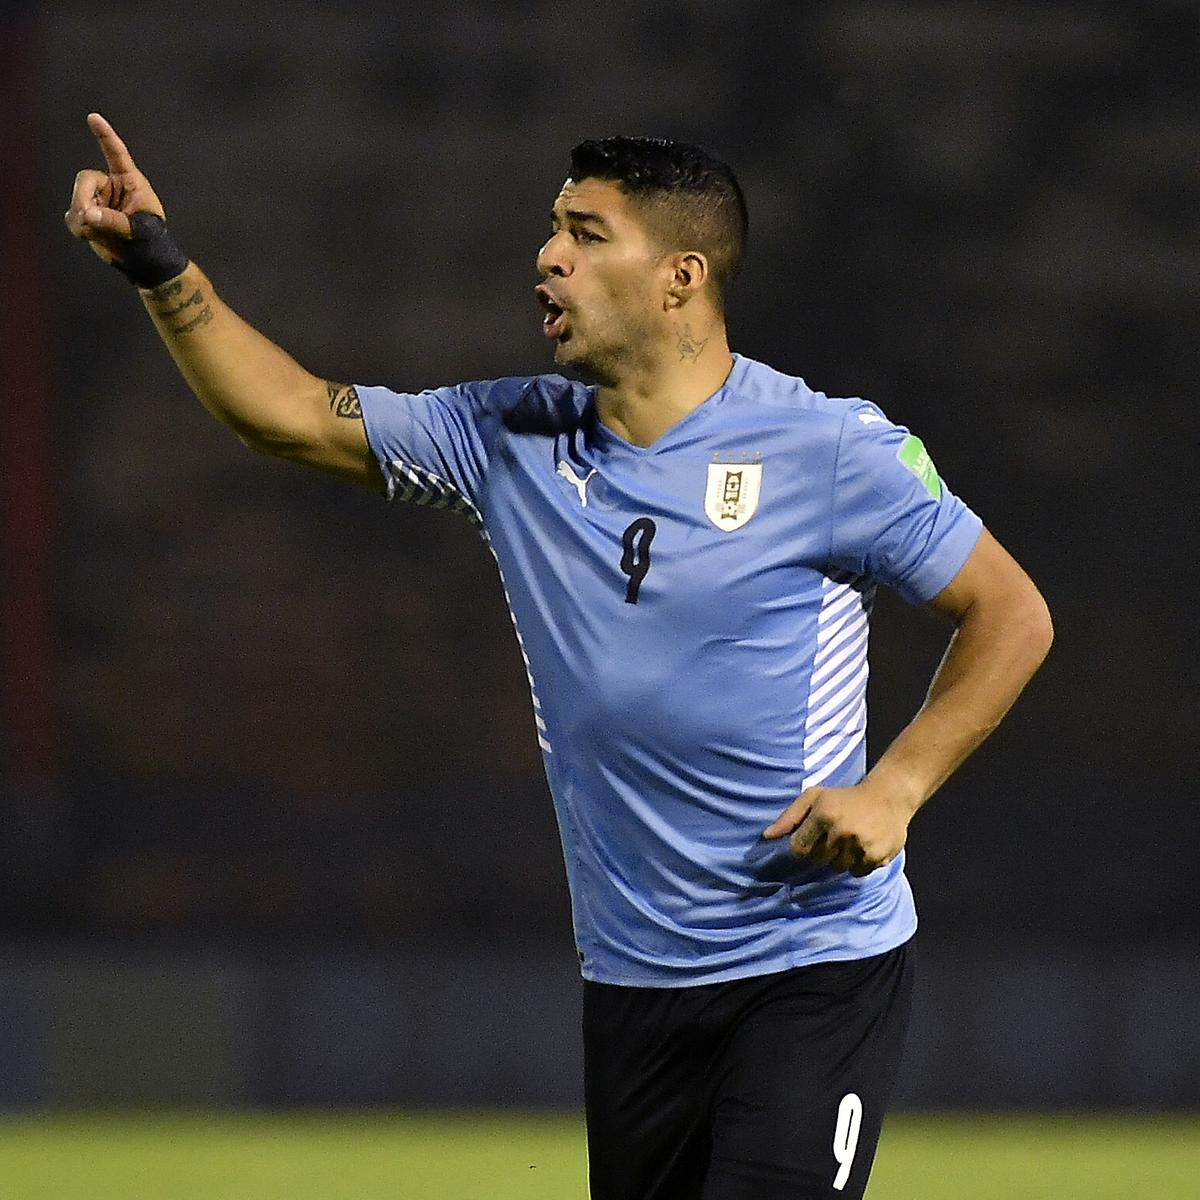 La orden de la FIFA que podría impactar radicalmente en la camiseta de la  Selección de Uruguay